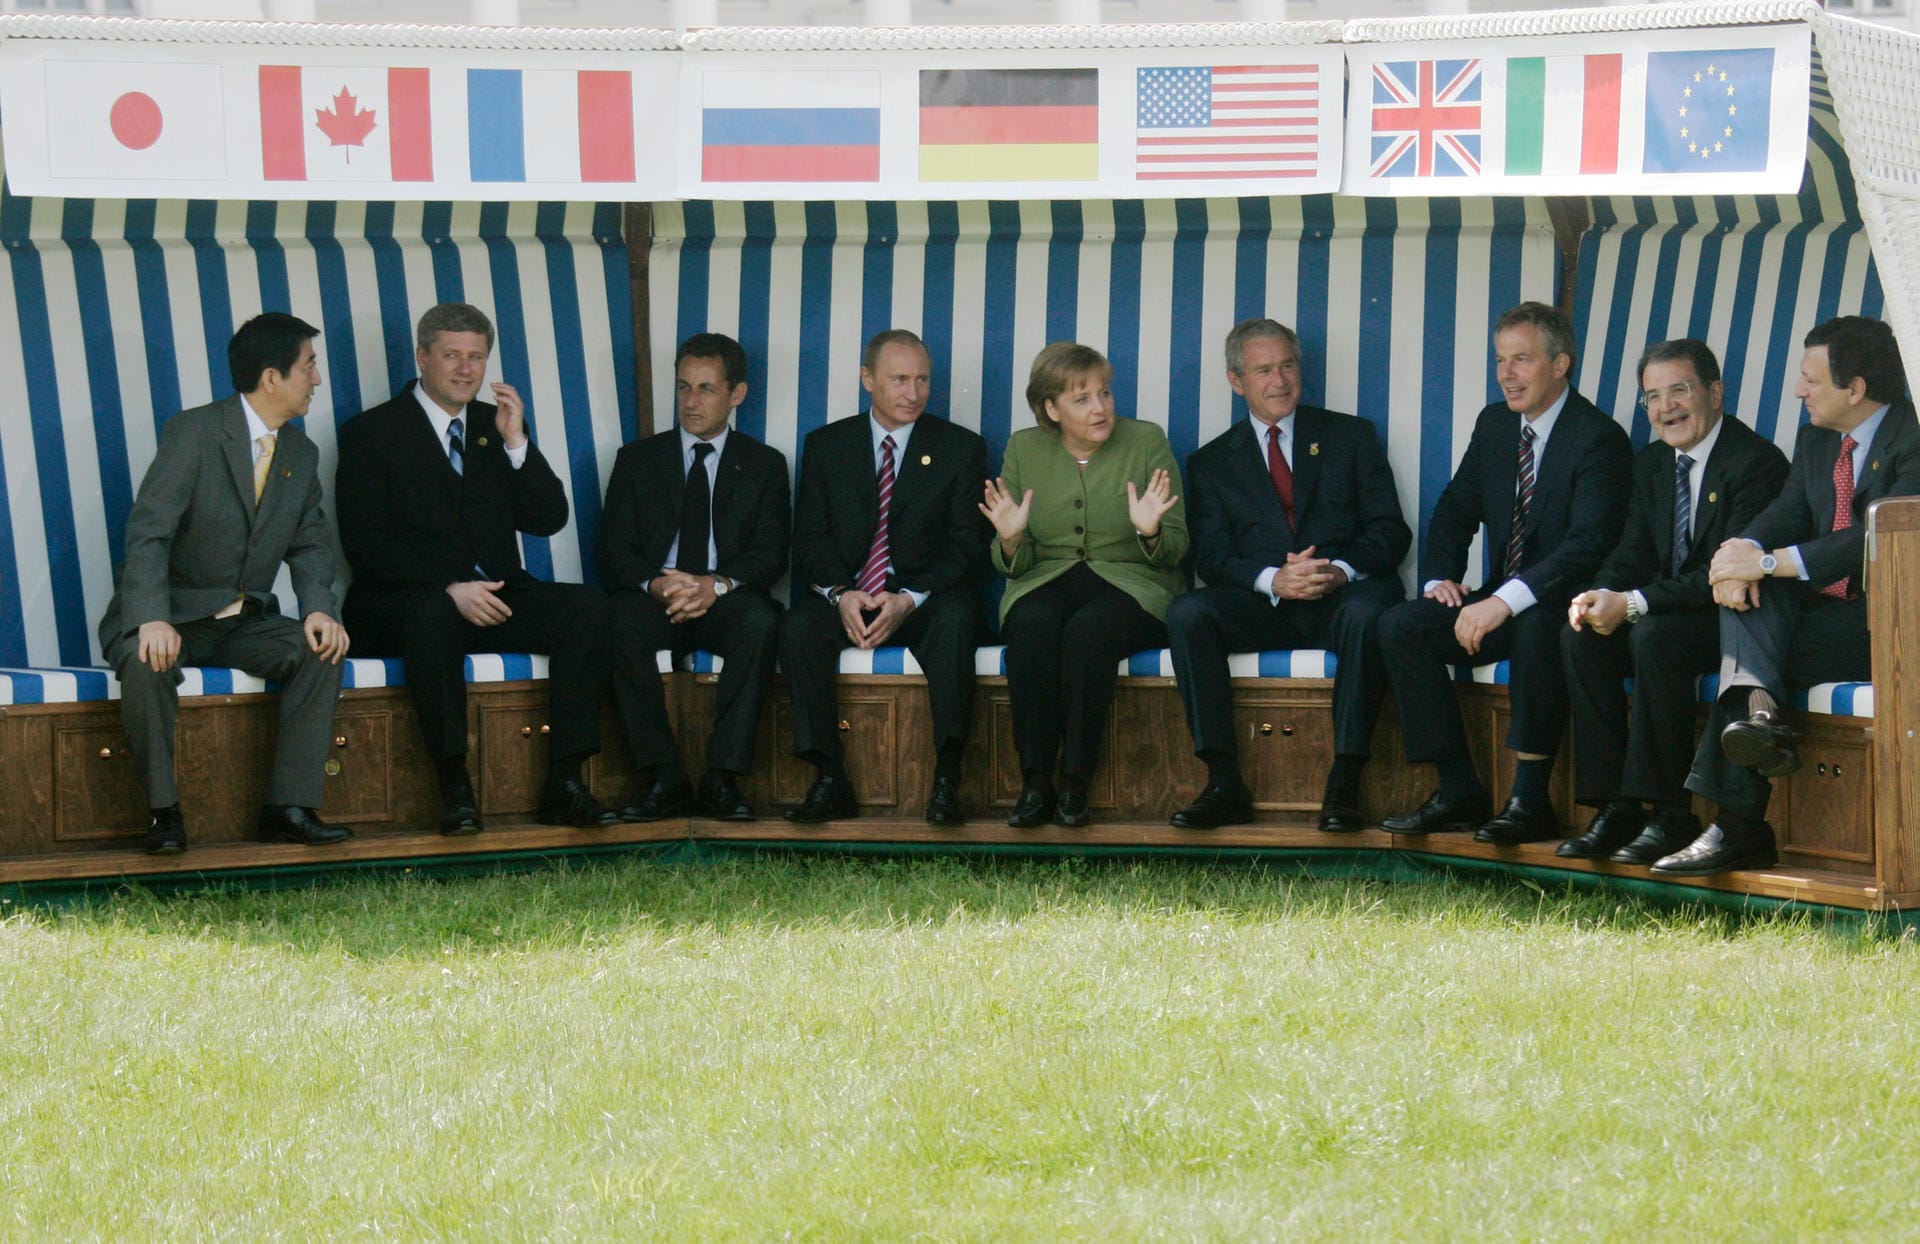 G8-Gipfel im Strandkorb von Heiligendamm 2007: An der Ostseeküste trafen die Staats- und Regierungschefs zusammen – damals noch mit Wladimir Putin. Nach der russischen Annexion der Krim 2014 wurde Russland aus der Runde ausgeschlossen.